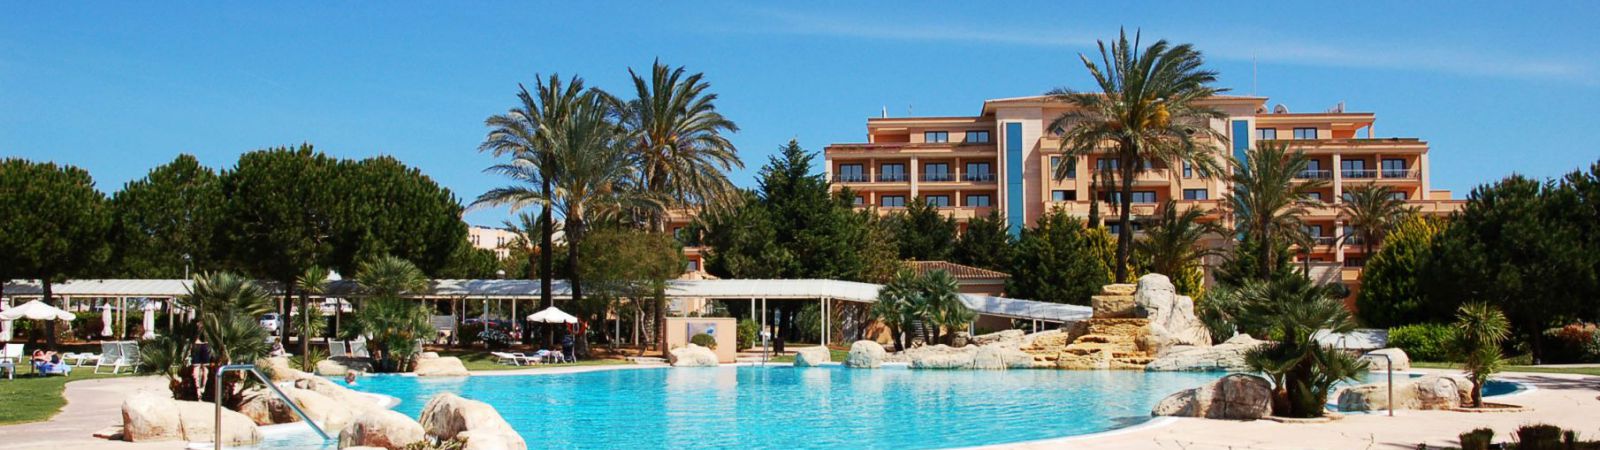 Hotel op Mallorca